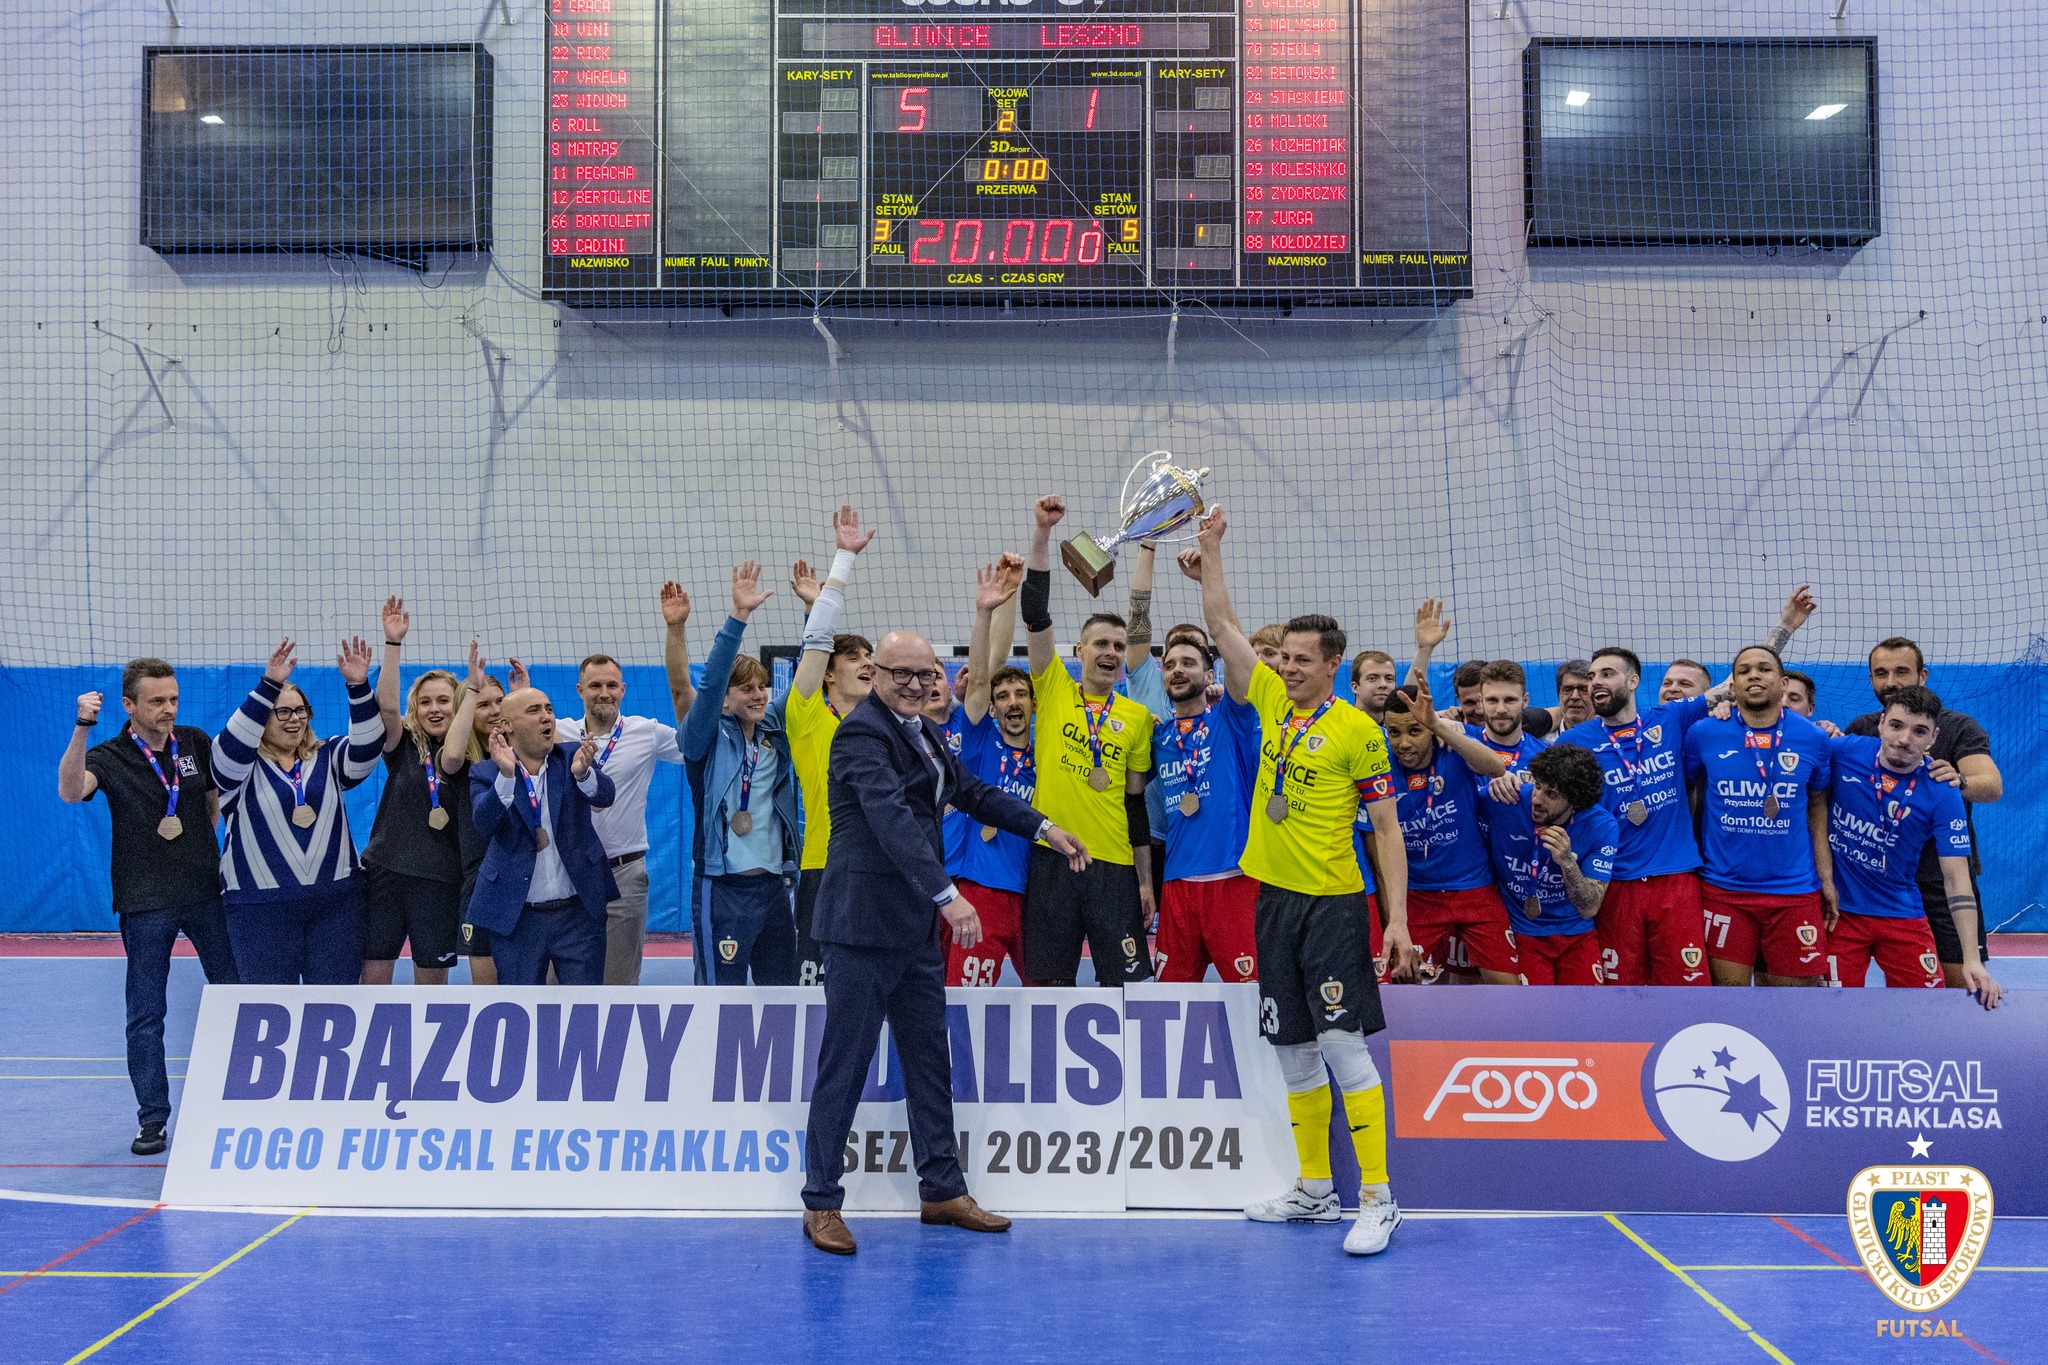 Gratulacje! Futsalowy Piast drugi rok z rzędu zdobywa brązowy medal